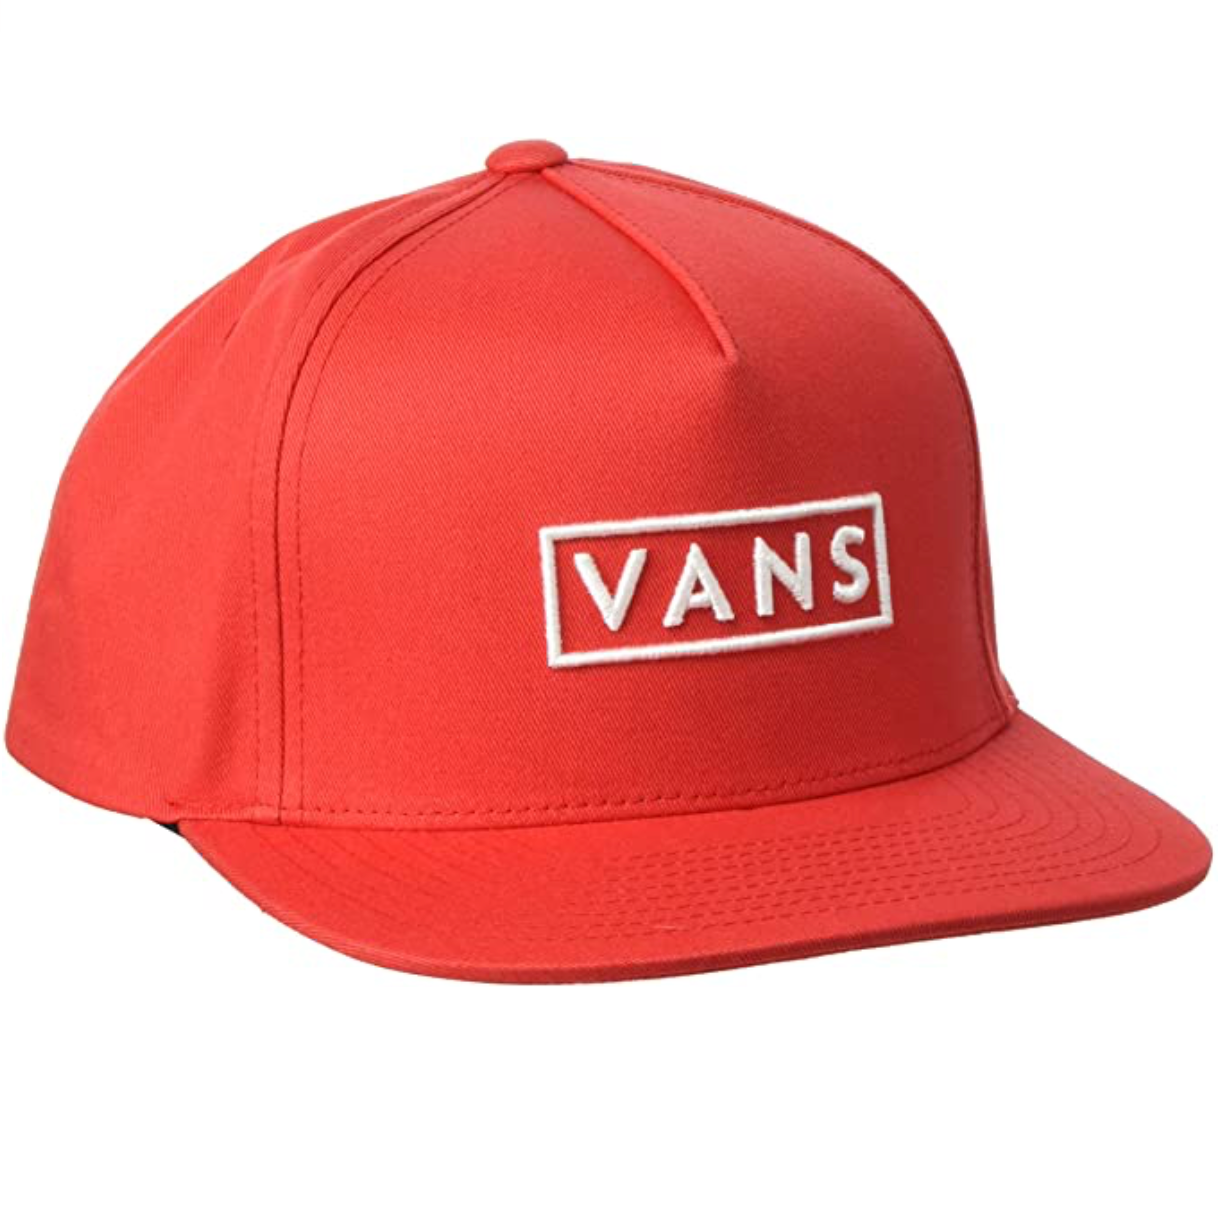 VANS Easy Box Snapback Cap - Red